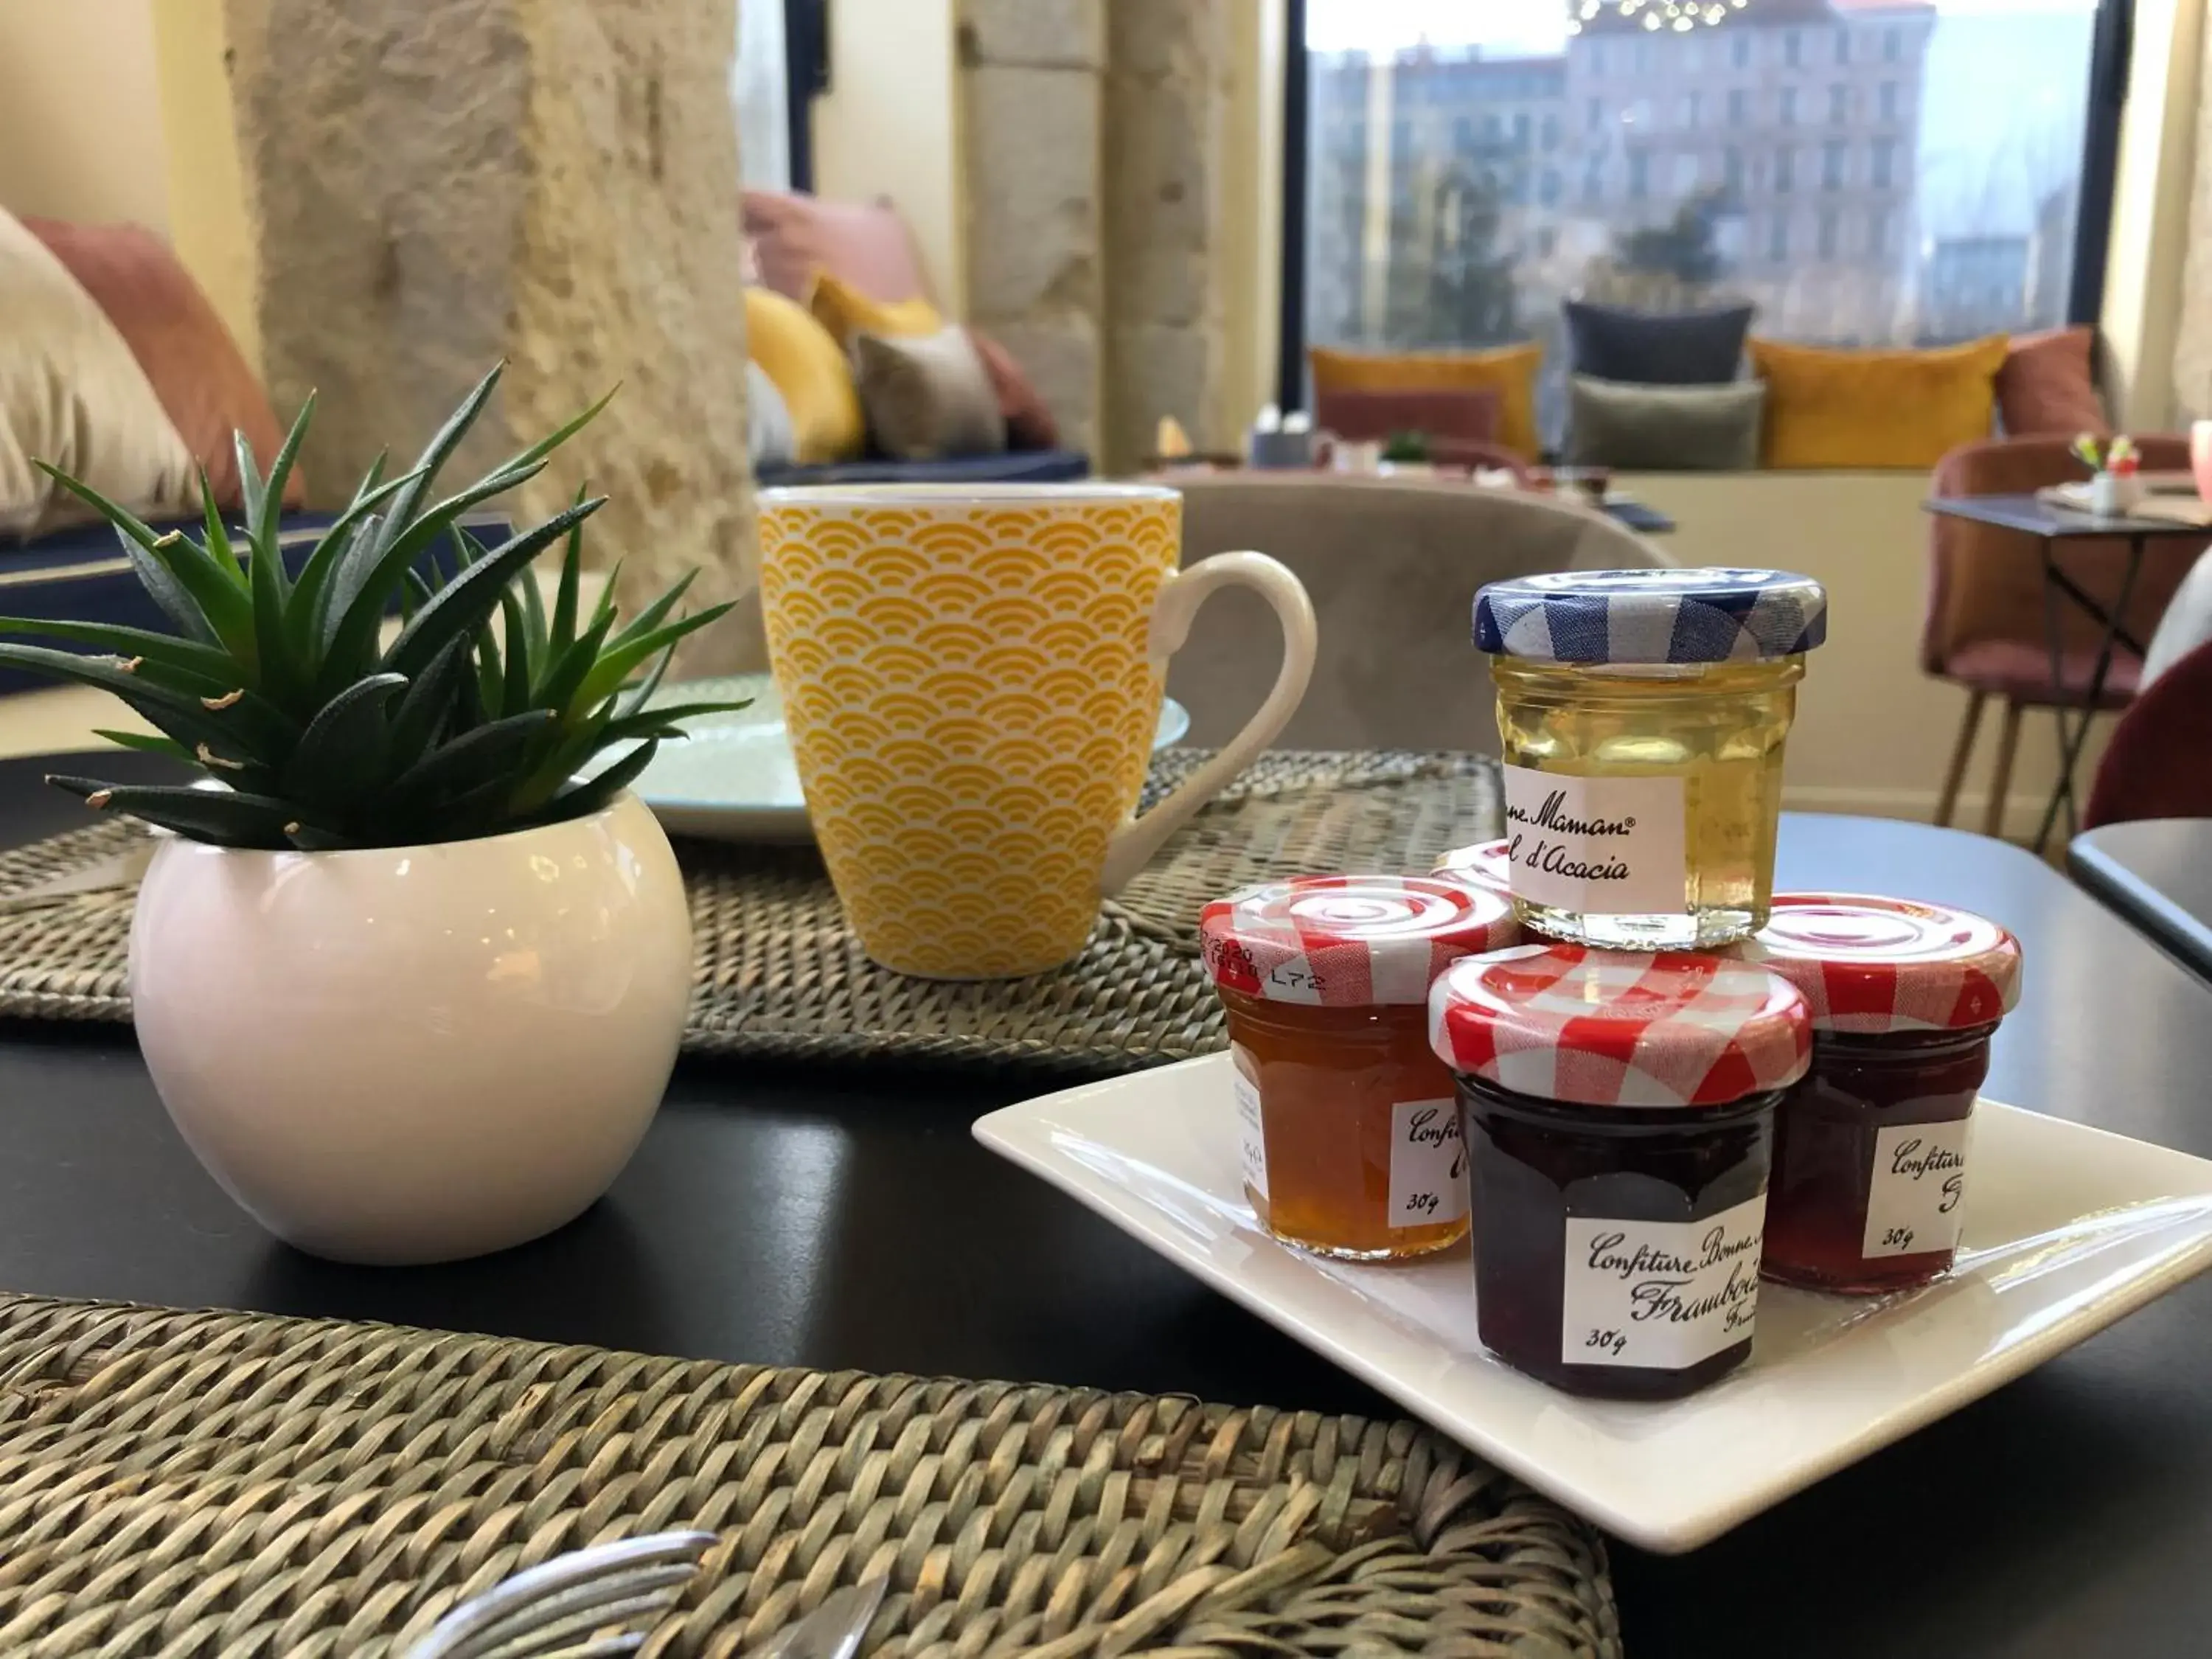 Buffet breakfast in Hotelo Lyon Charité